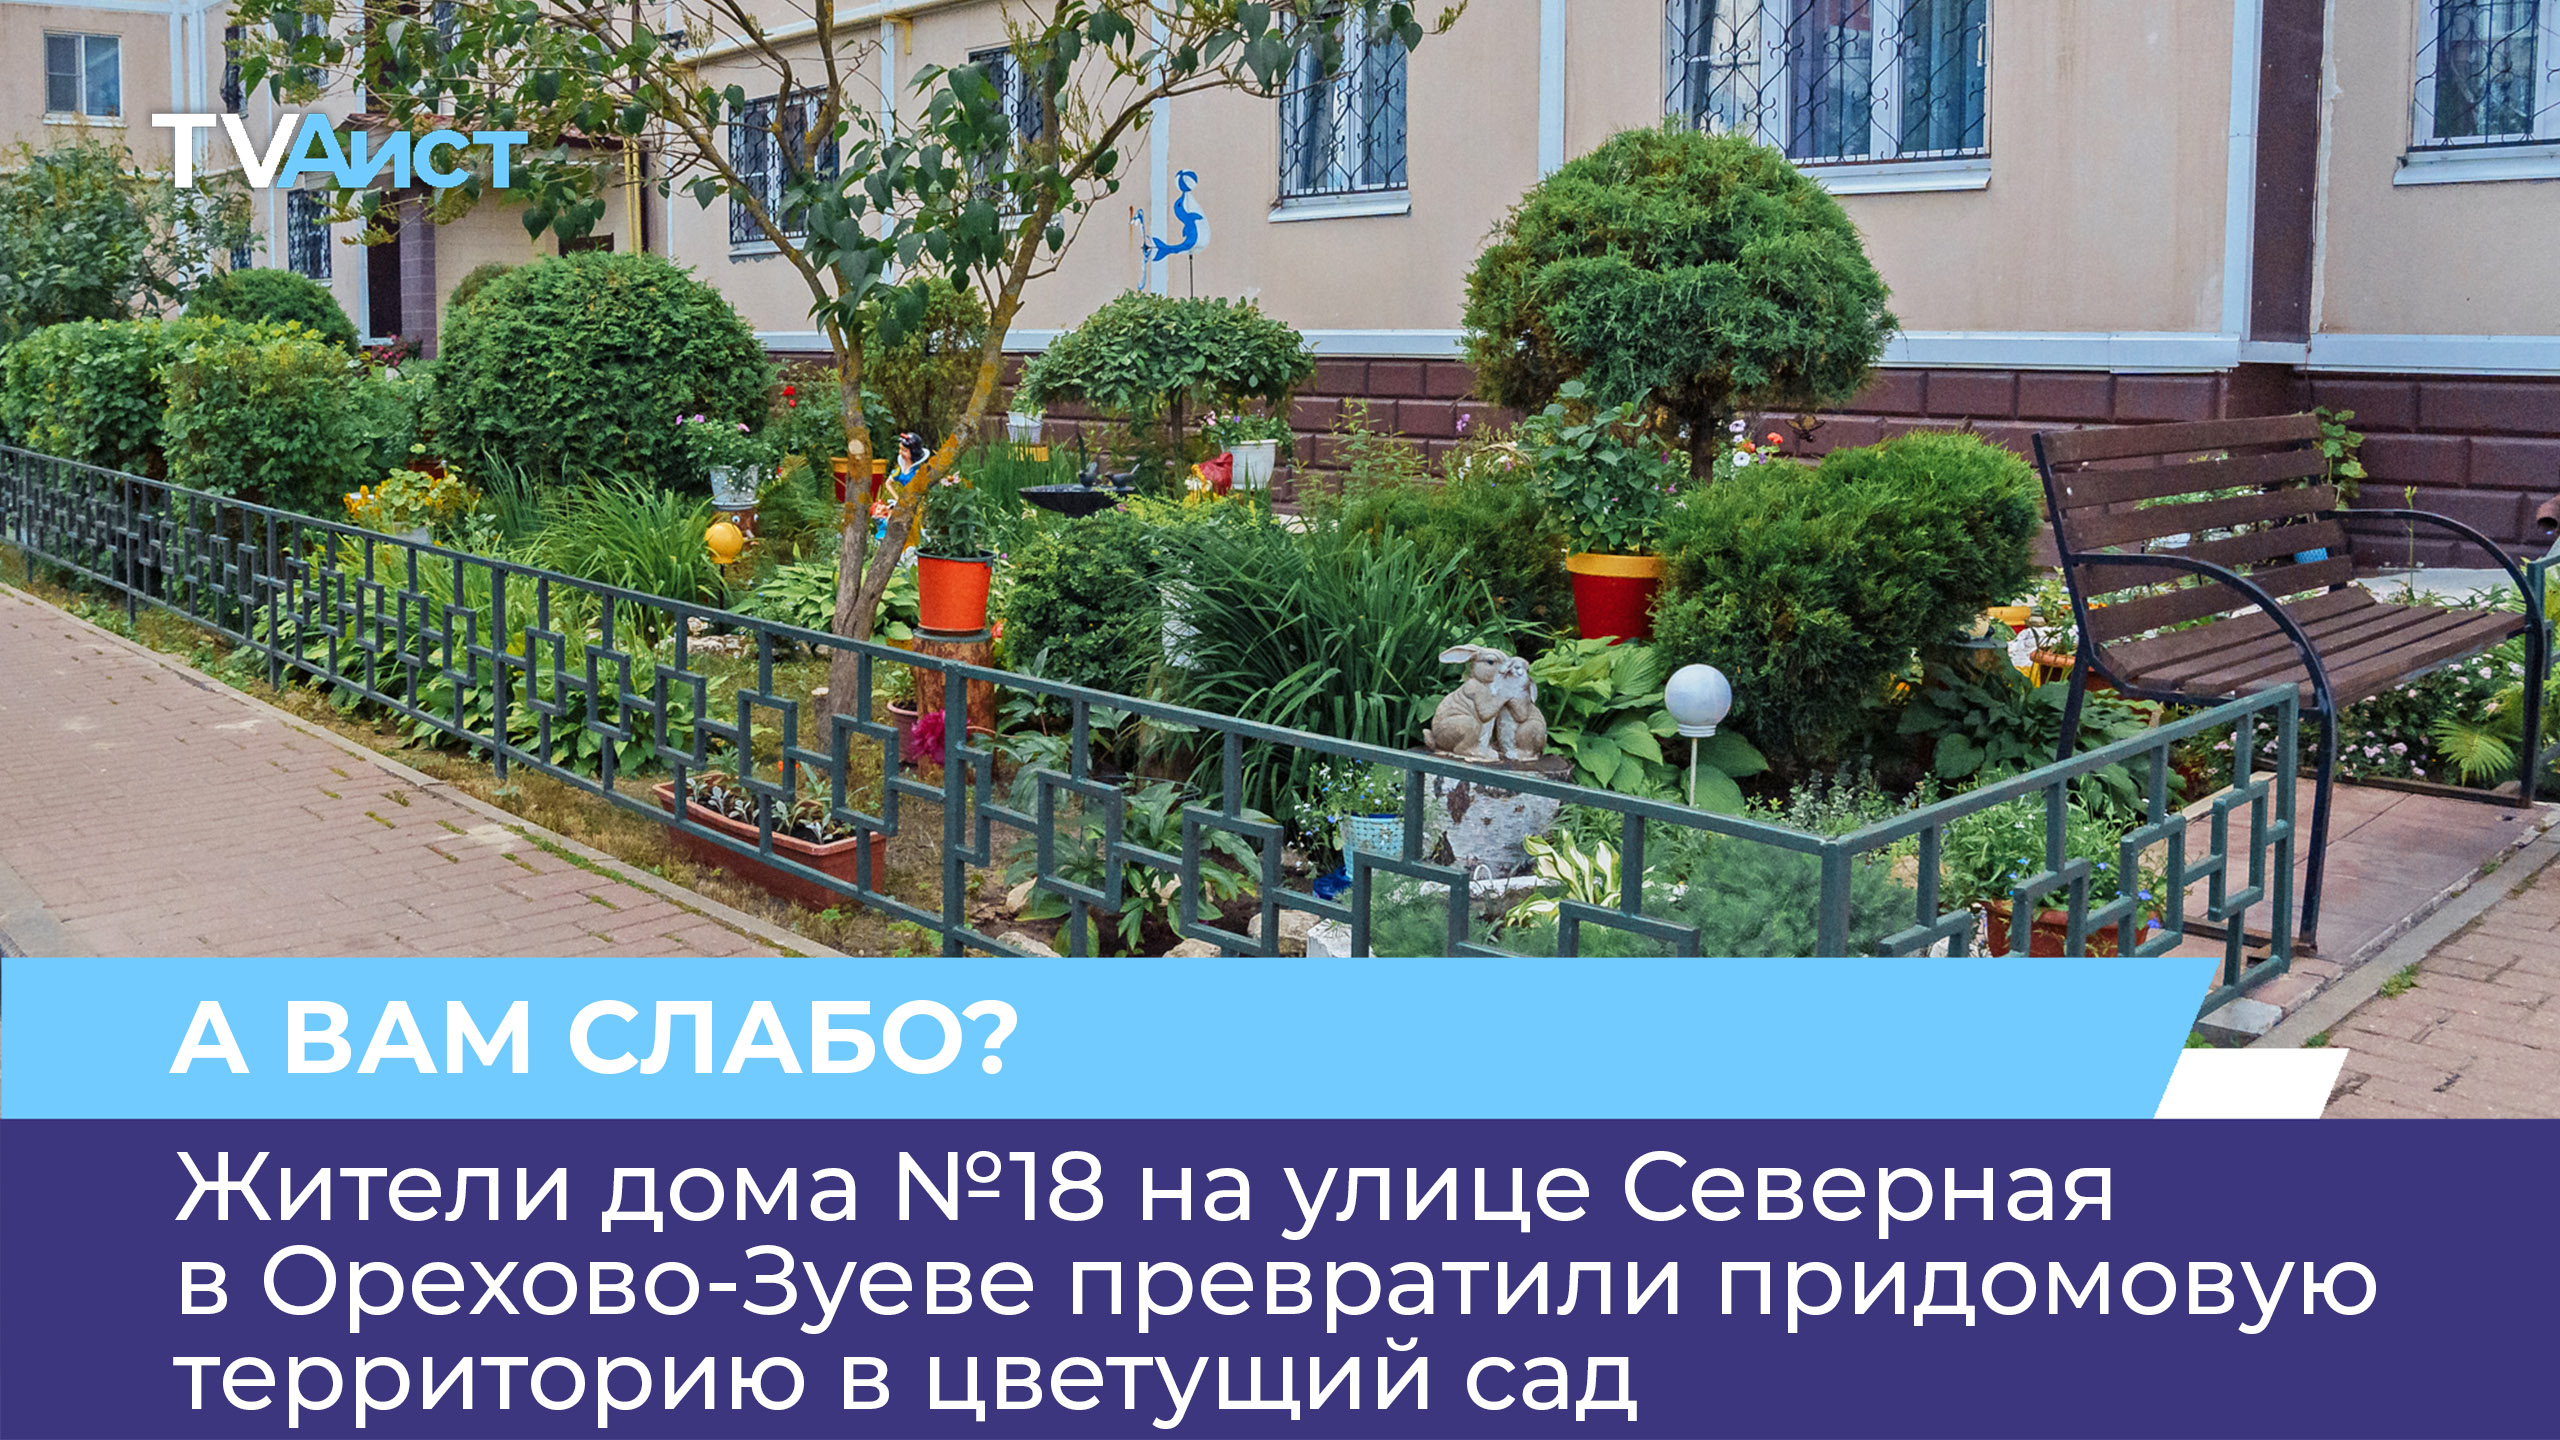 Жители дома №18 на улице Северная в Орехово-Зуеве превратили придомовую территорию в цветущий сад